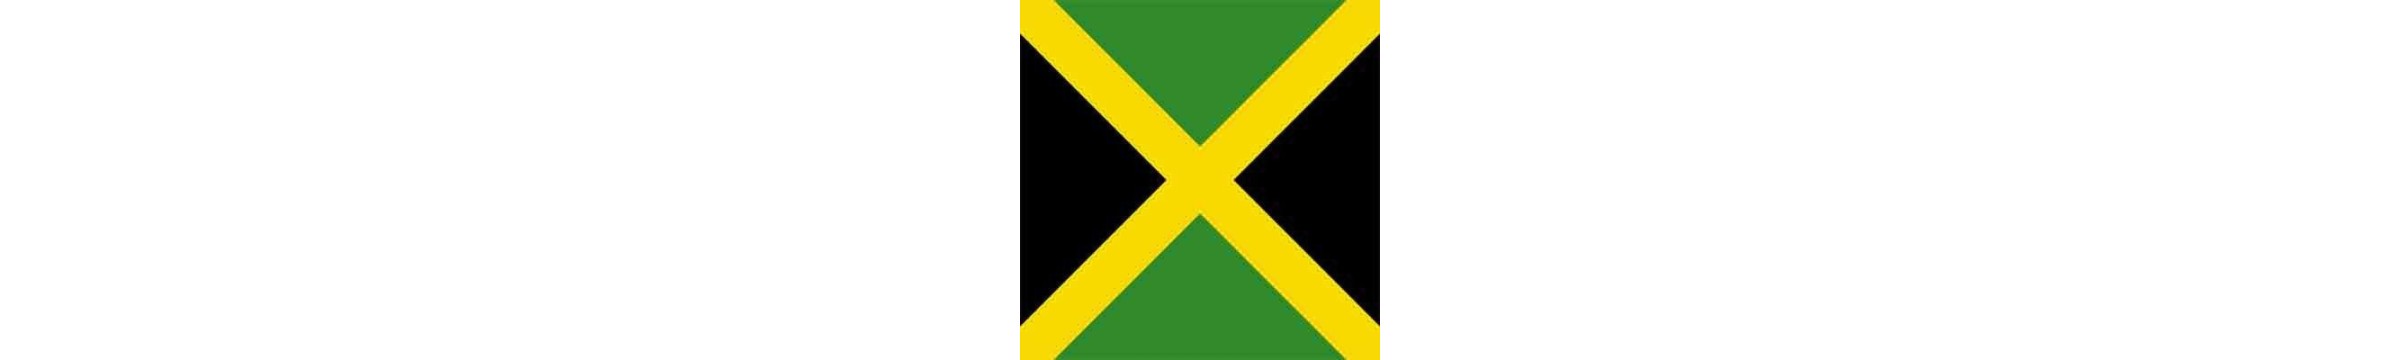 Worldrinks - Distribuidora de Cerveza Jamaicana